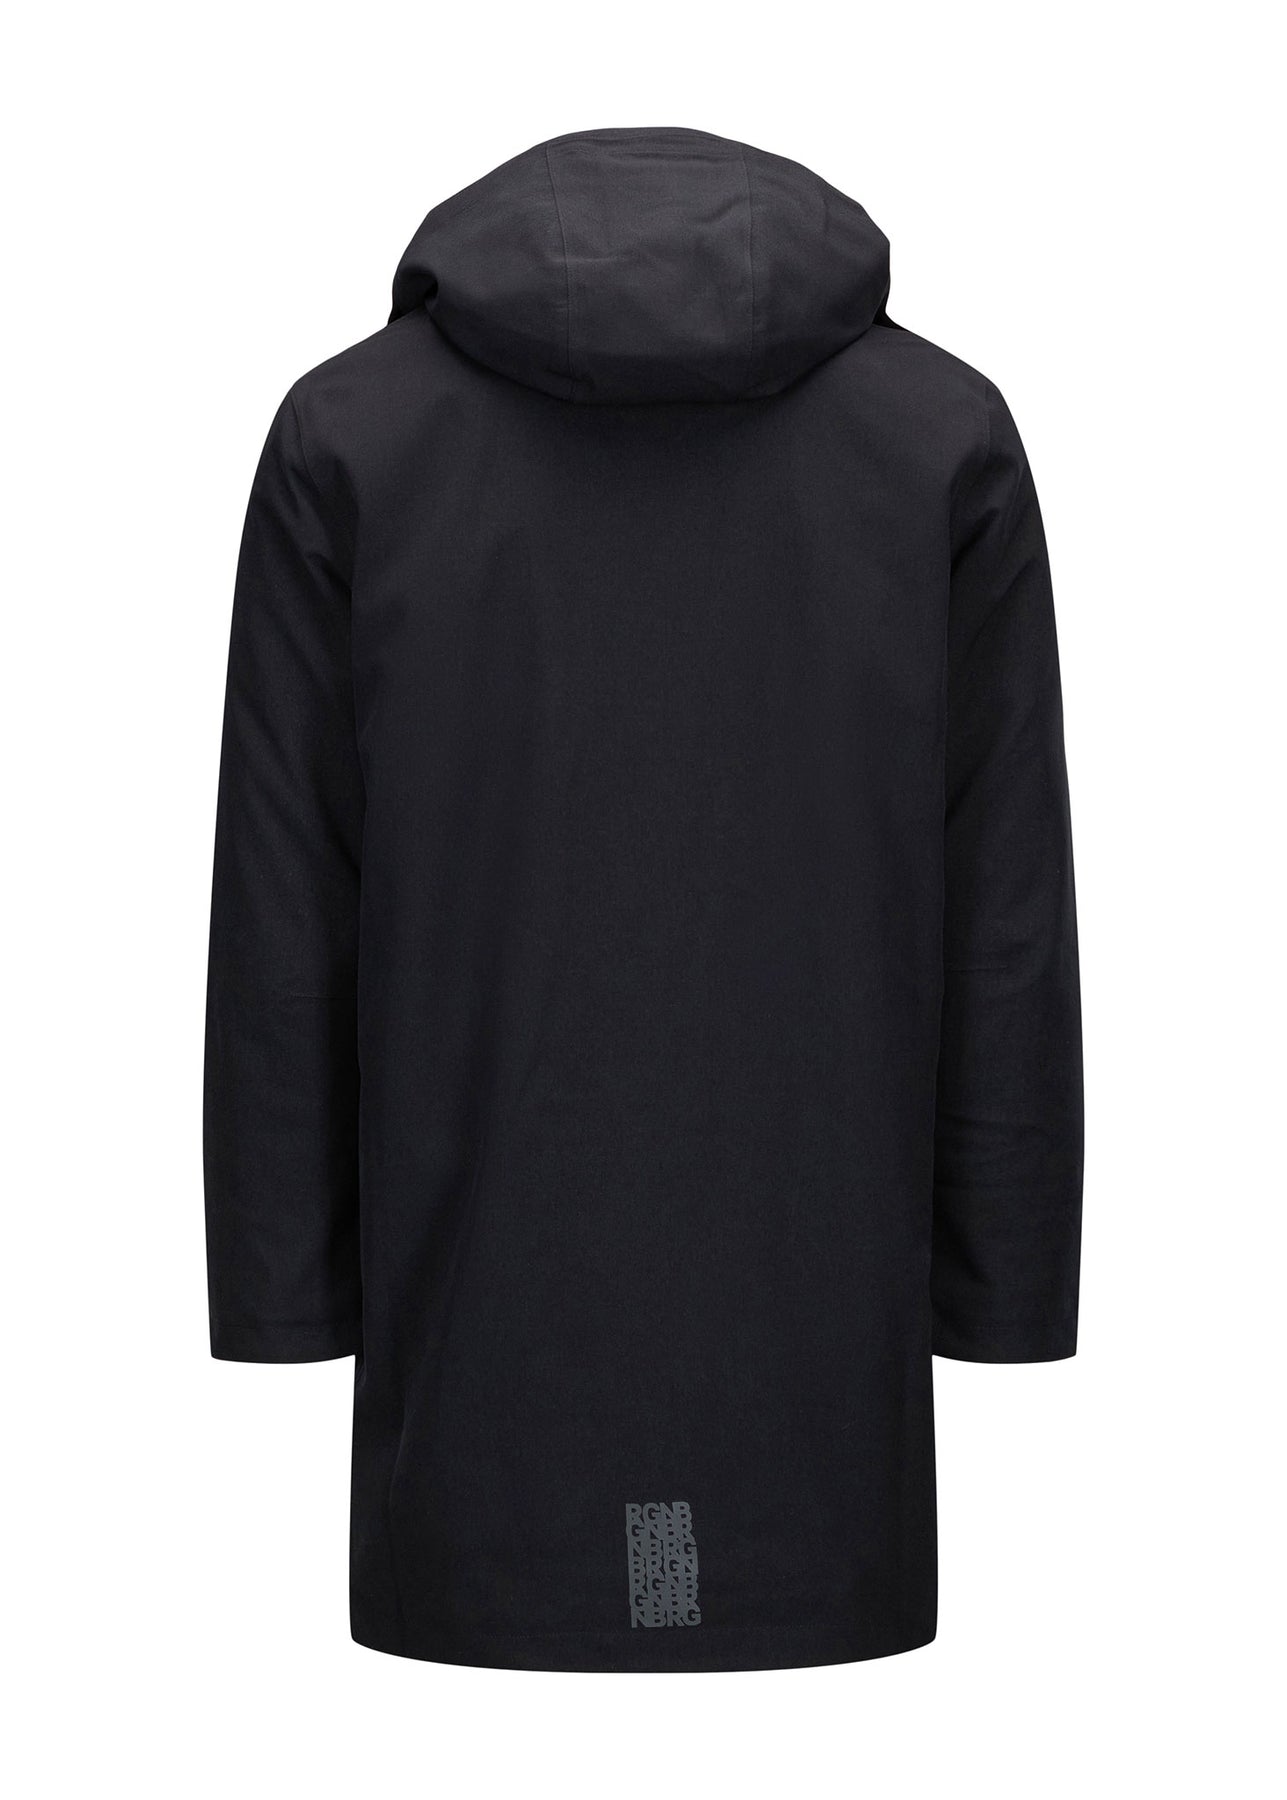 Vestavind Coat - New Black – BRGN